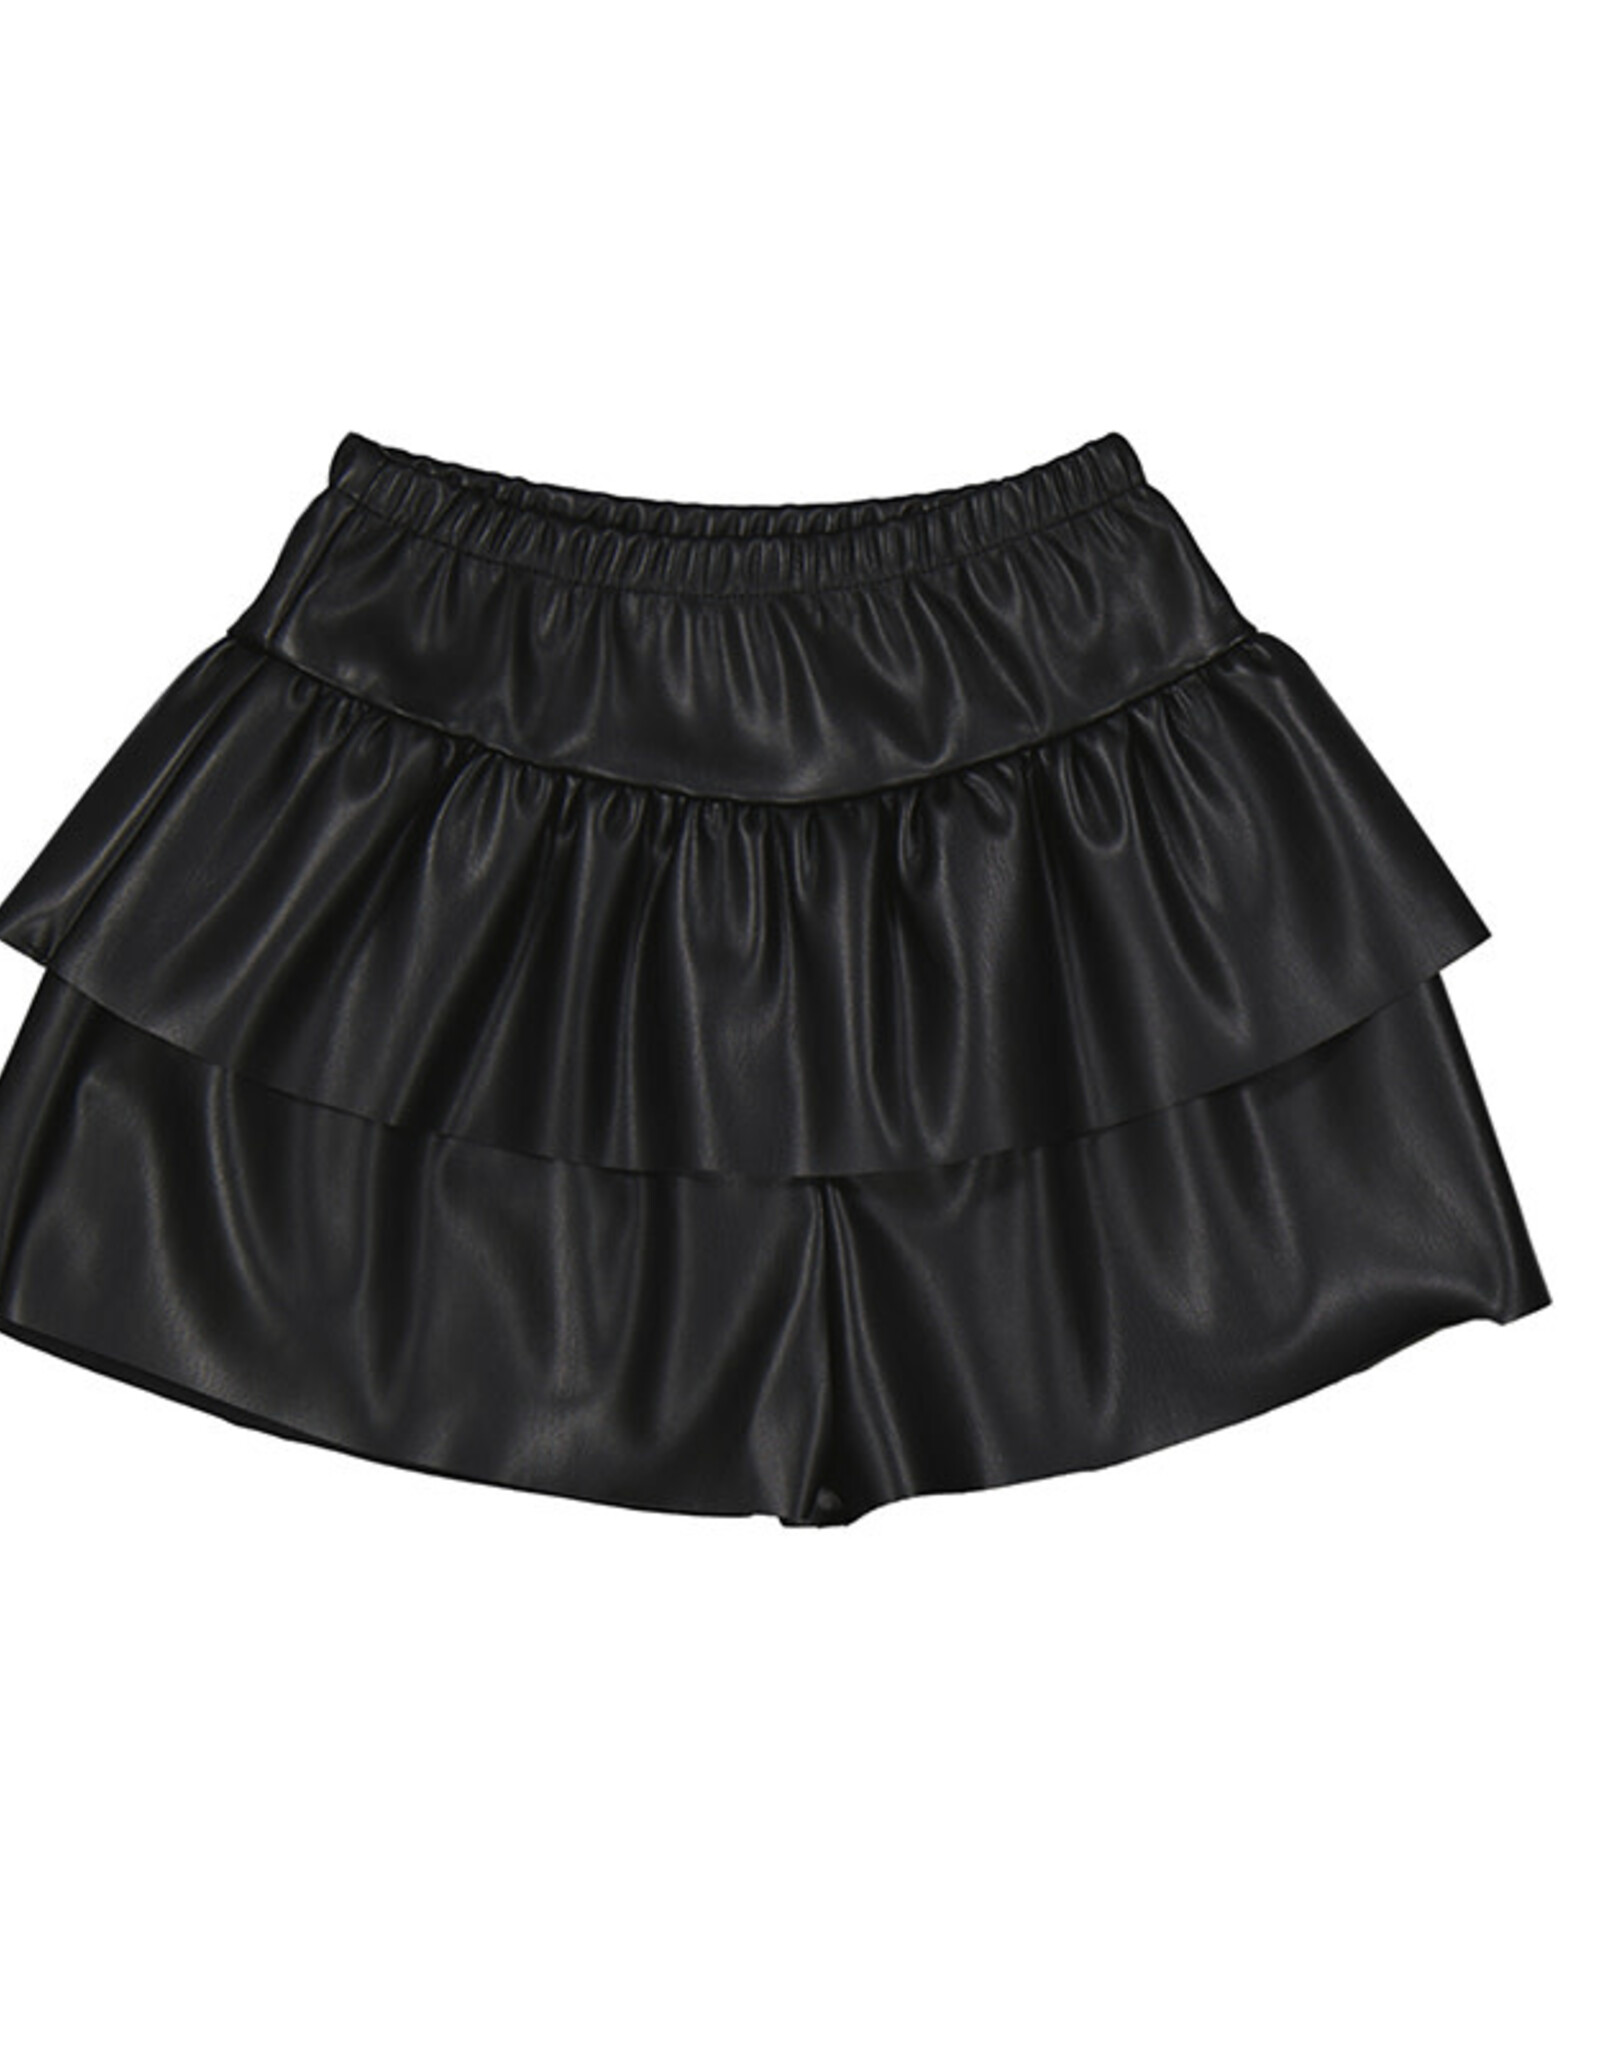 Mayoral Black Leather Ruffle Skirt